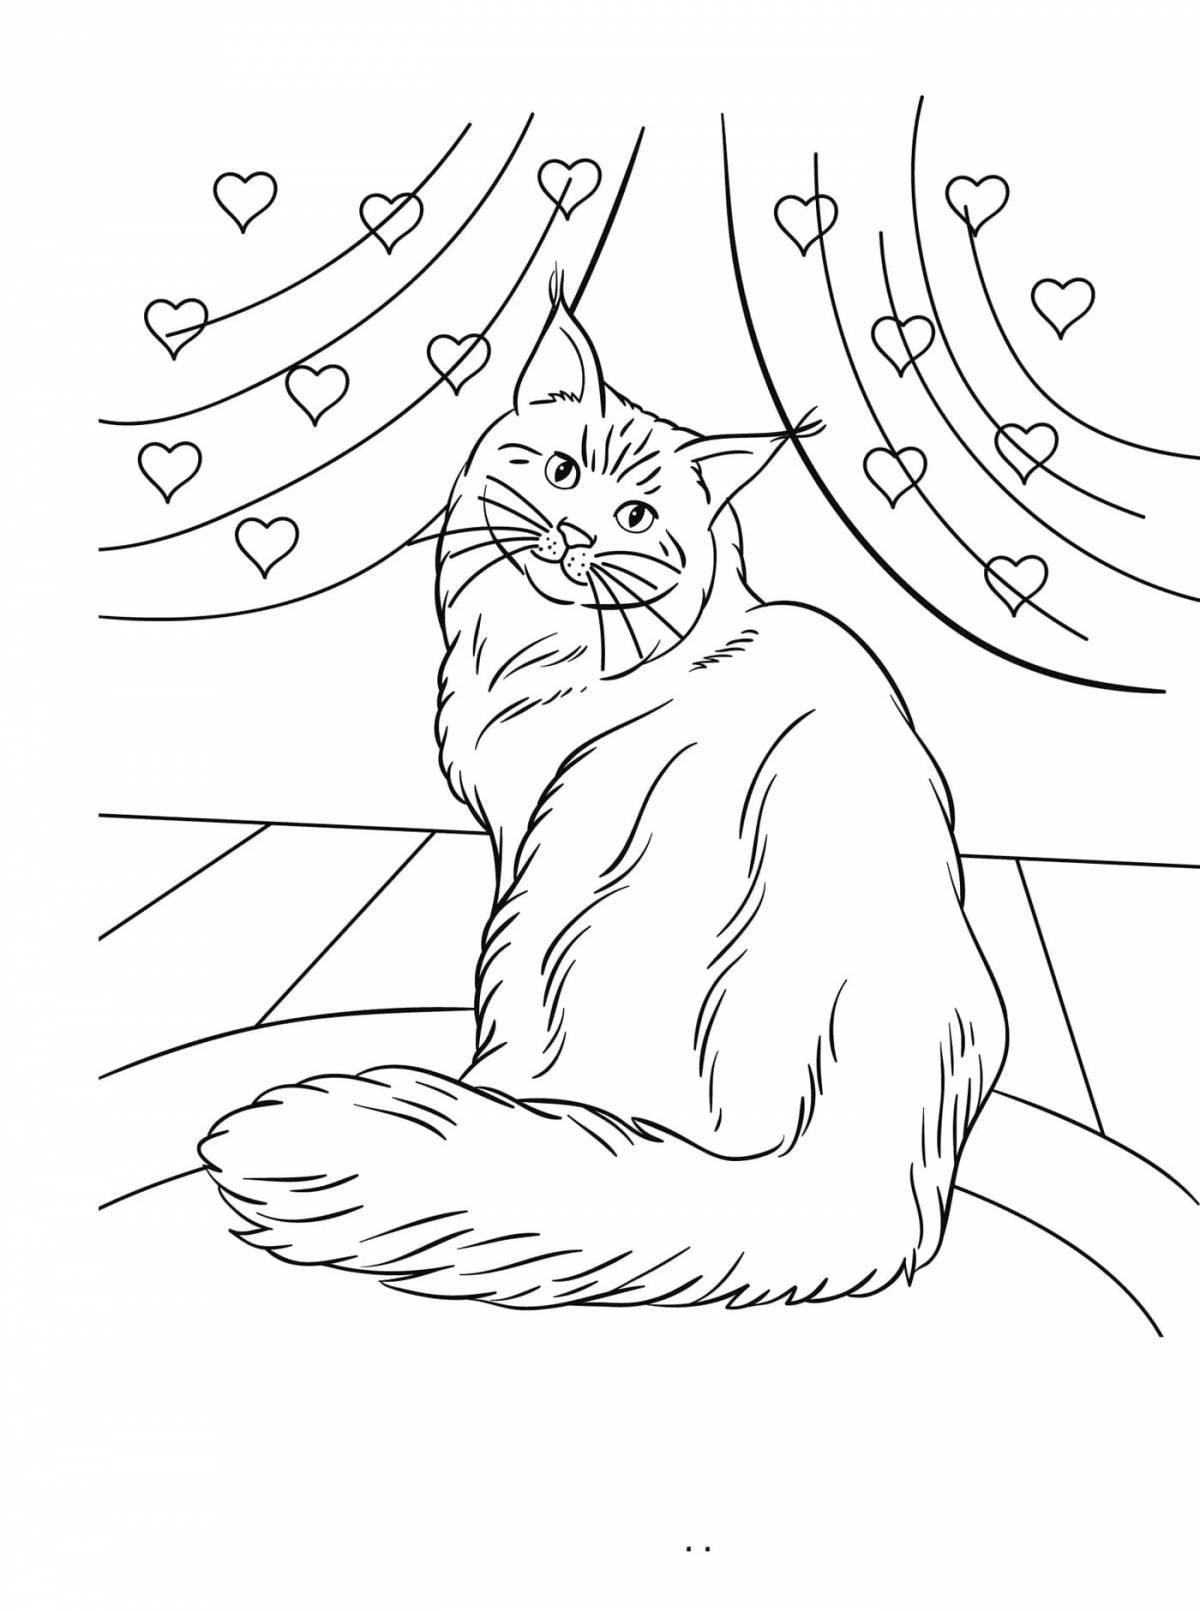 Charming siberian cat coloring book